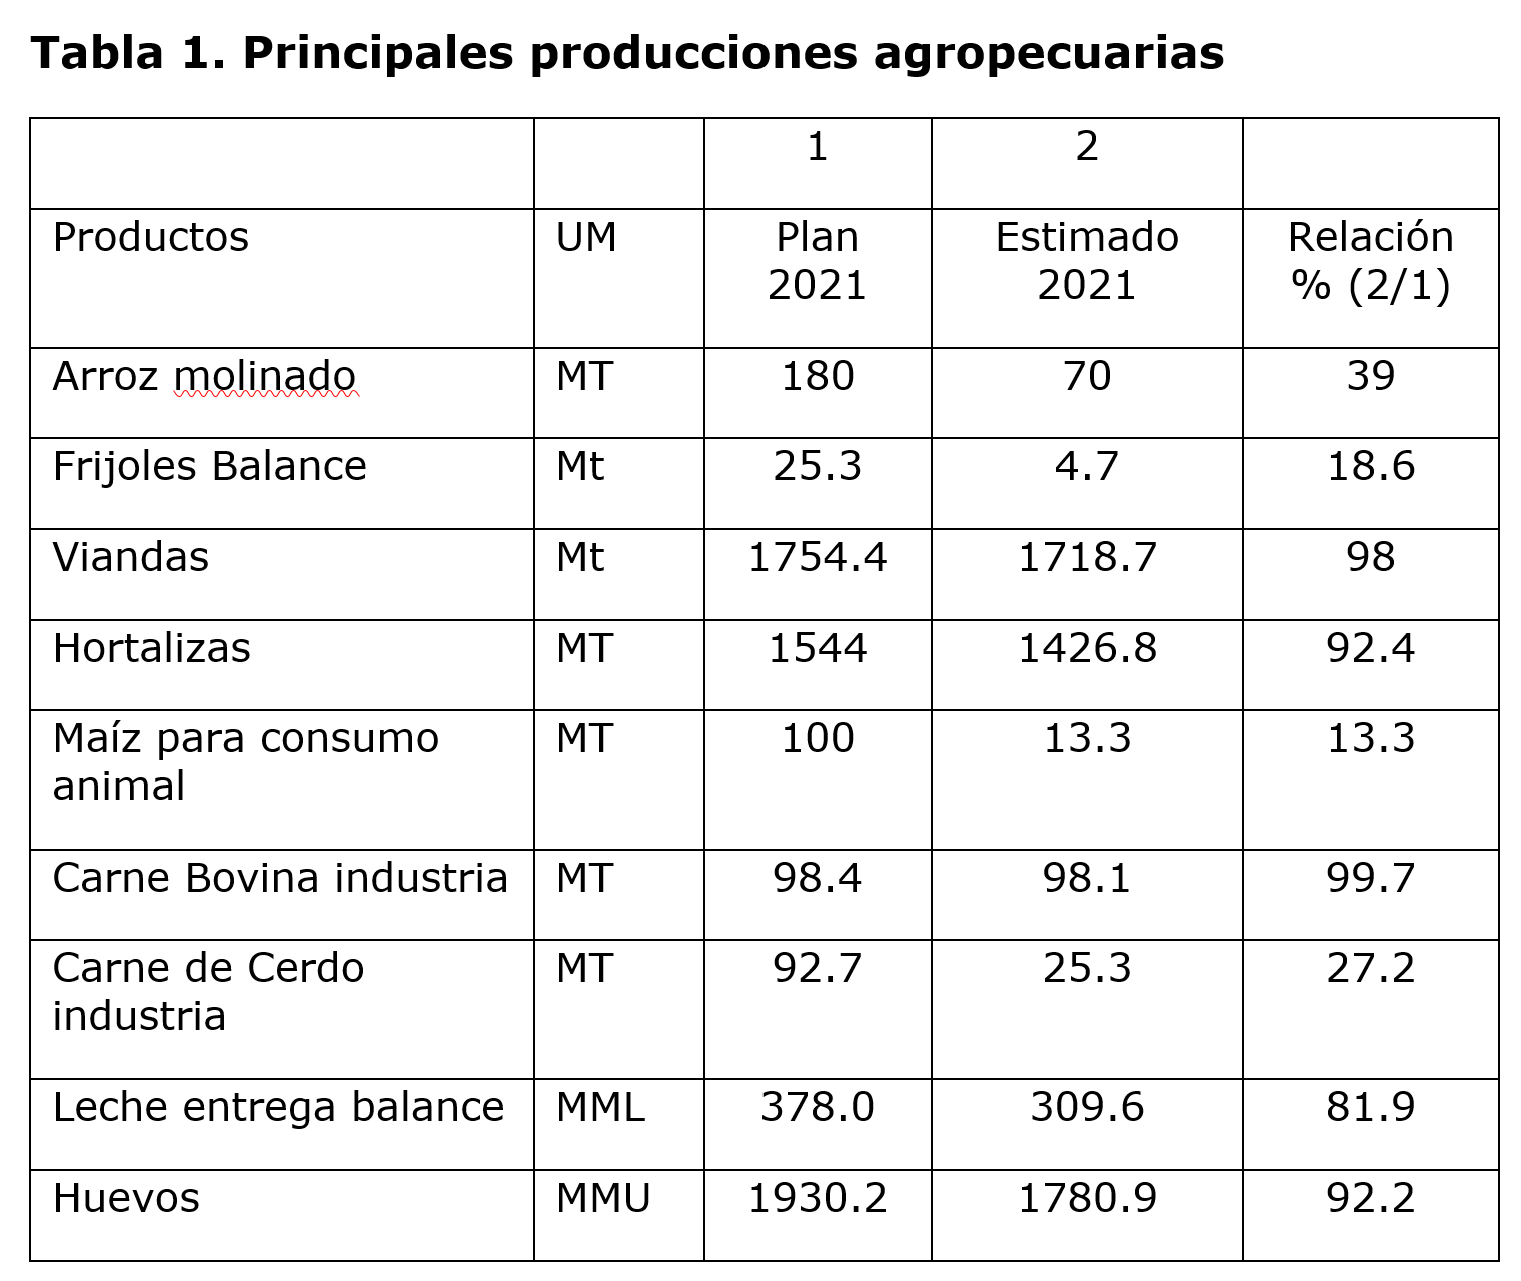 La tabla demuestra las principales producciones agropecuarias y las discrepancias entre el plan y el estimado